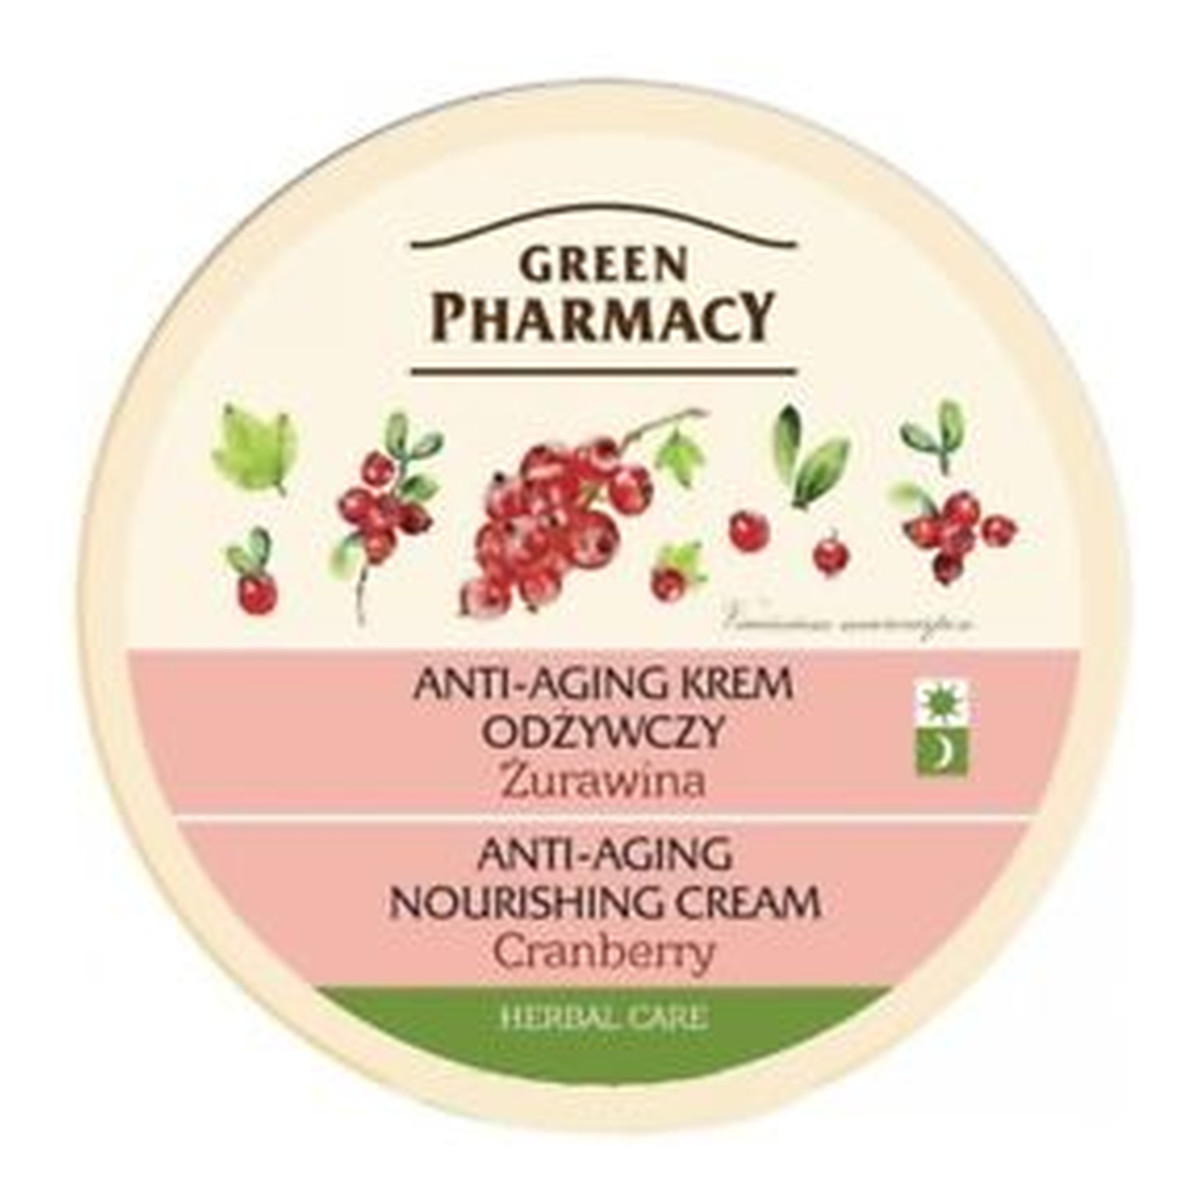 Green Pharmacy Herbal Cosmetics Face Care Anti-Aging Krem Odżywczy Żurawina 150ml